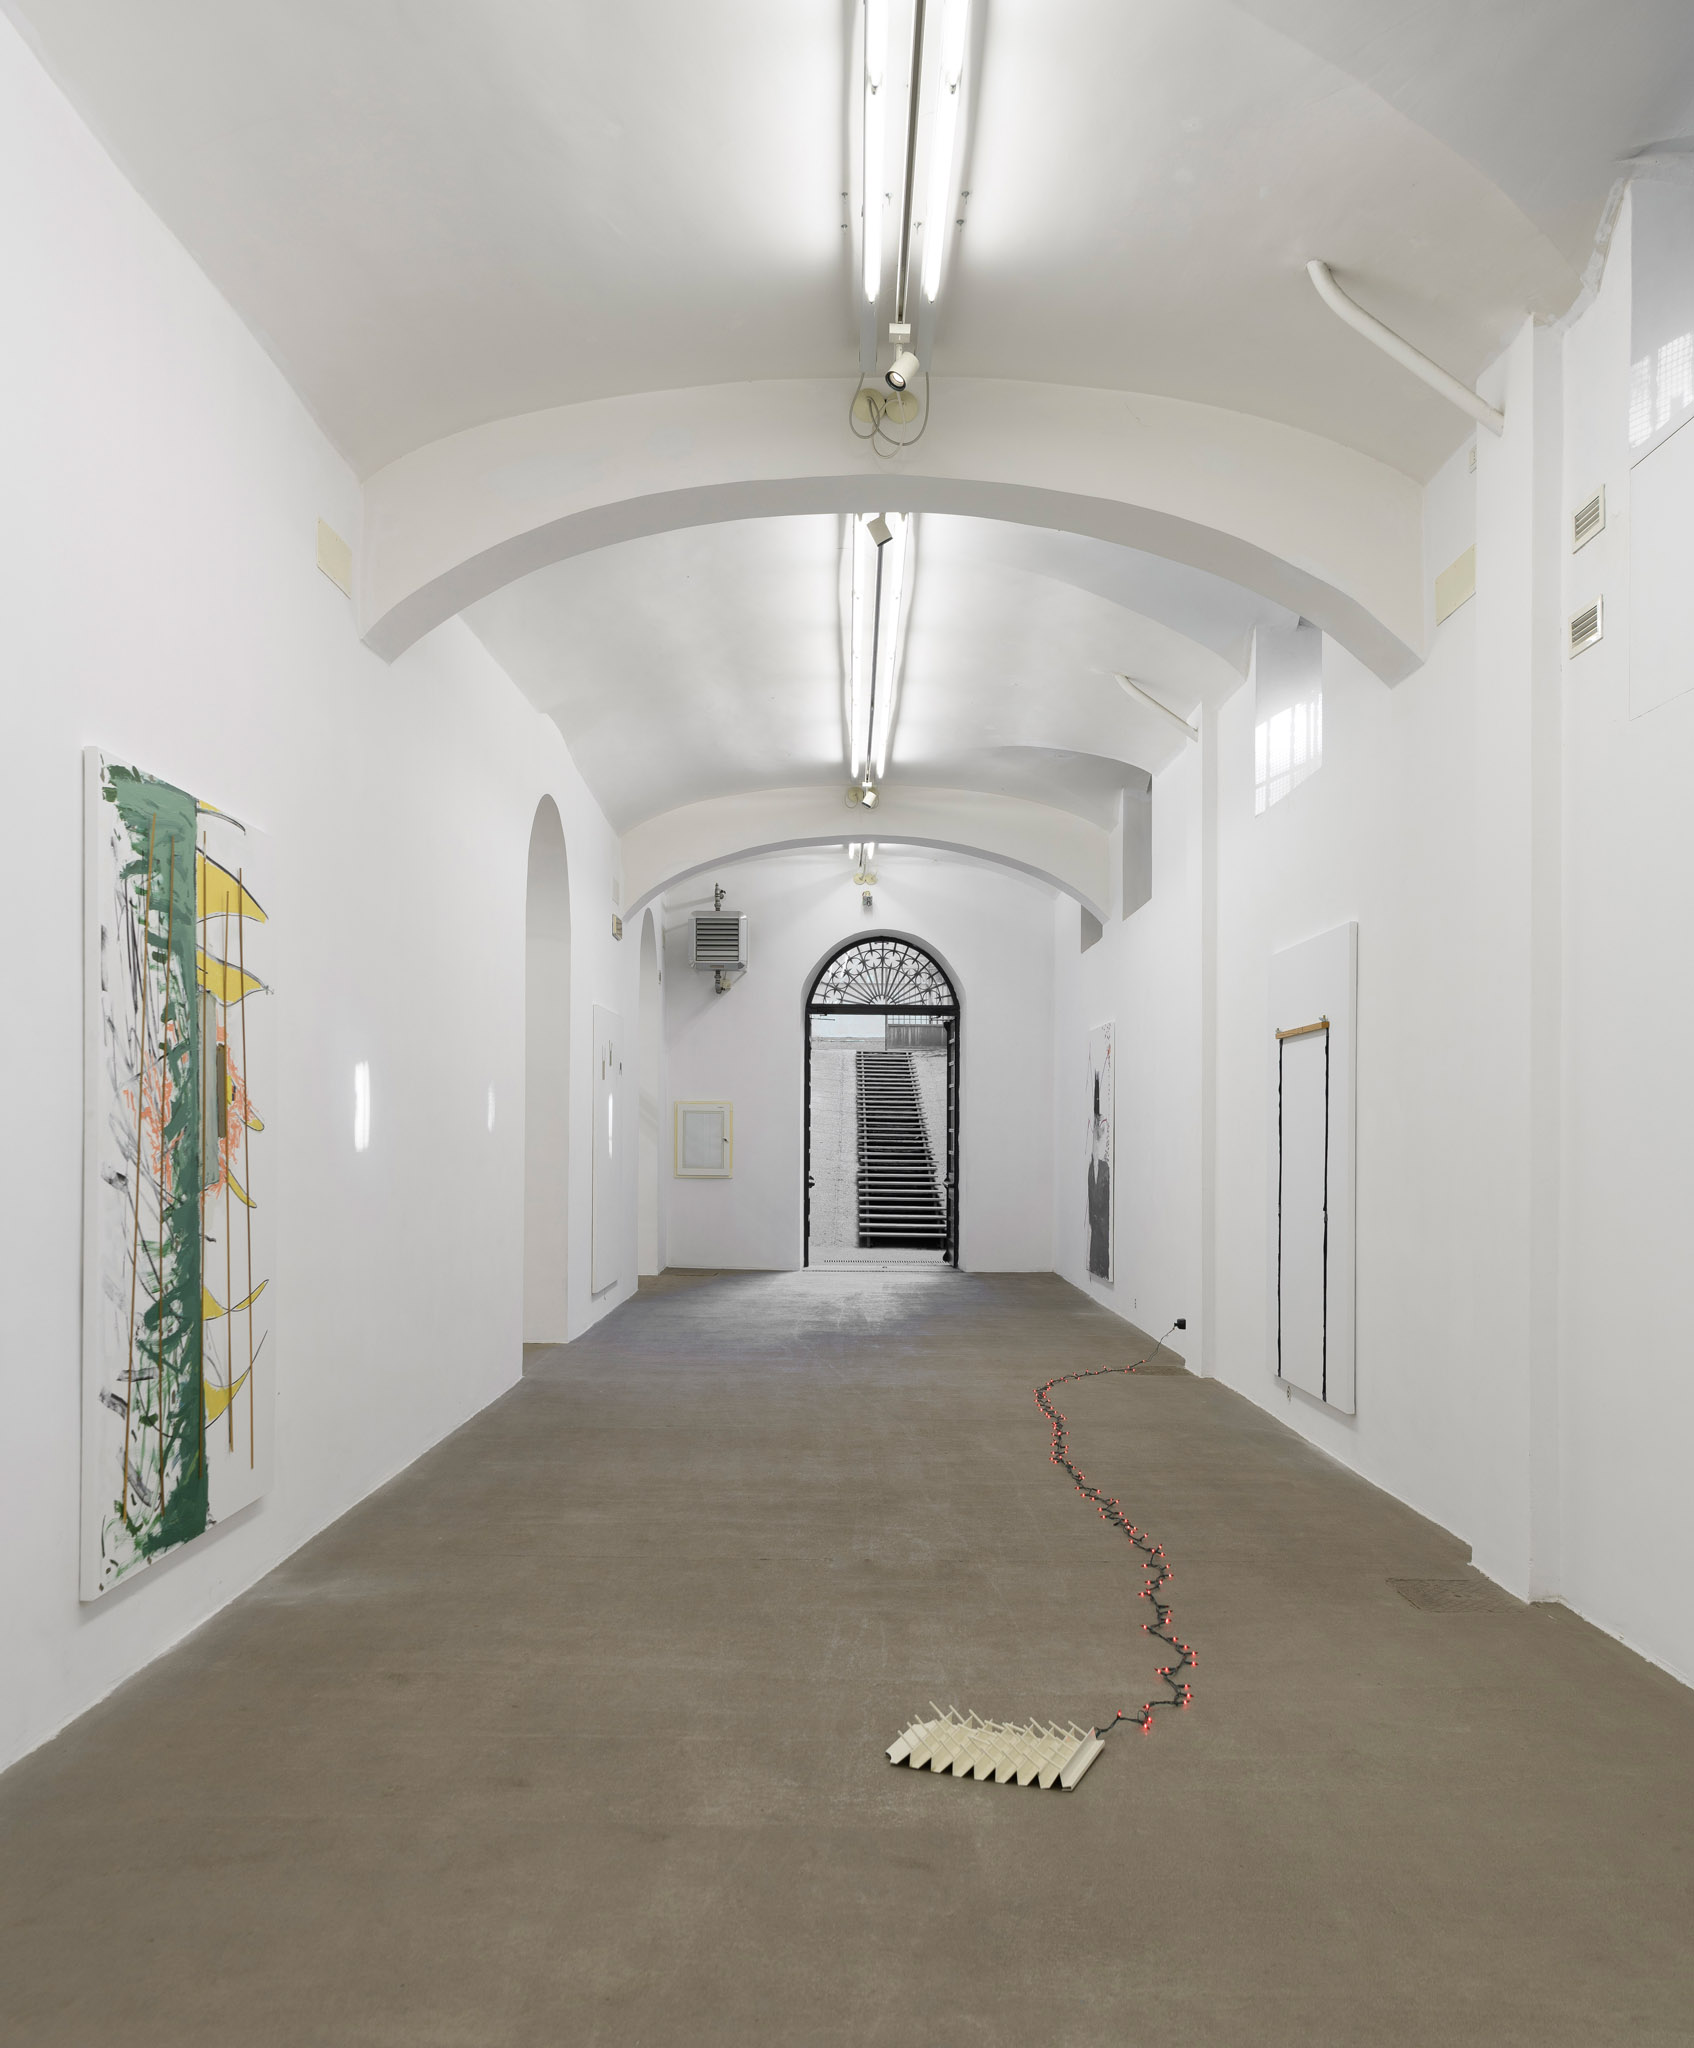 An exploration of how time only exists in half steps. Installation view presso Fondazione Giuliani, foto di Giorgio Benni